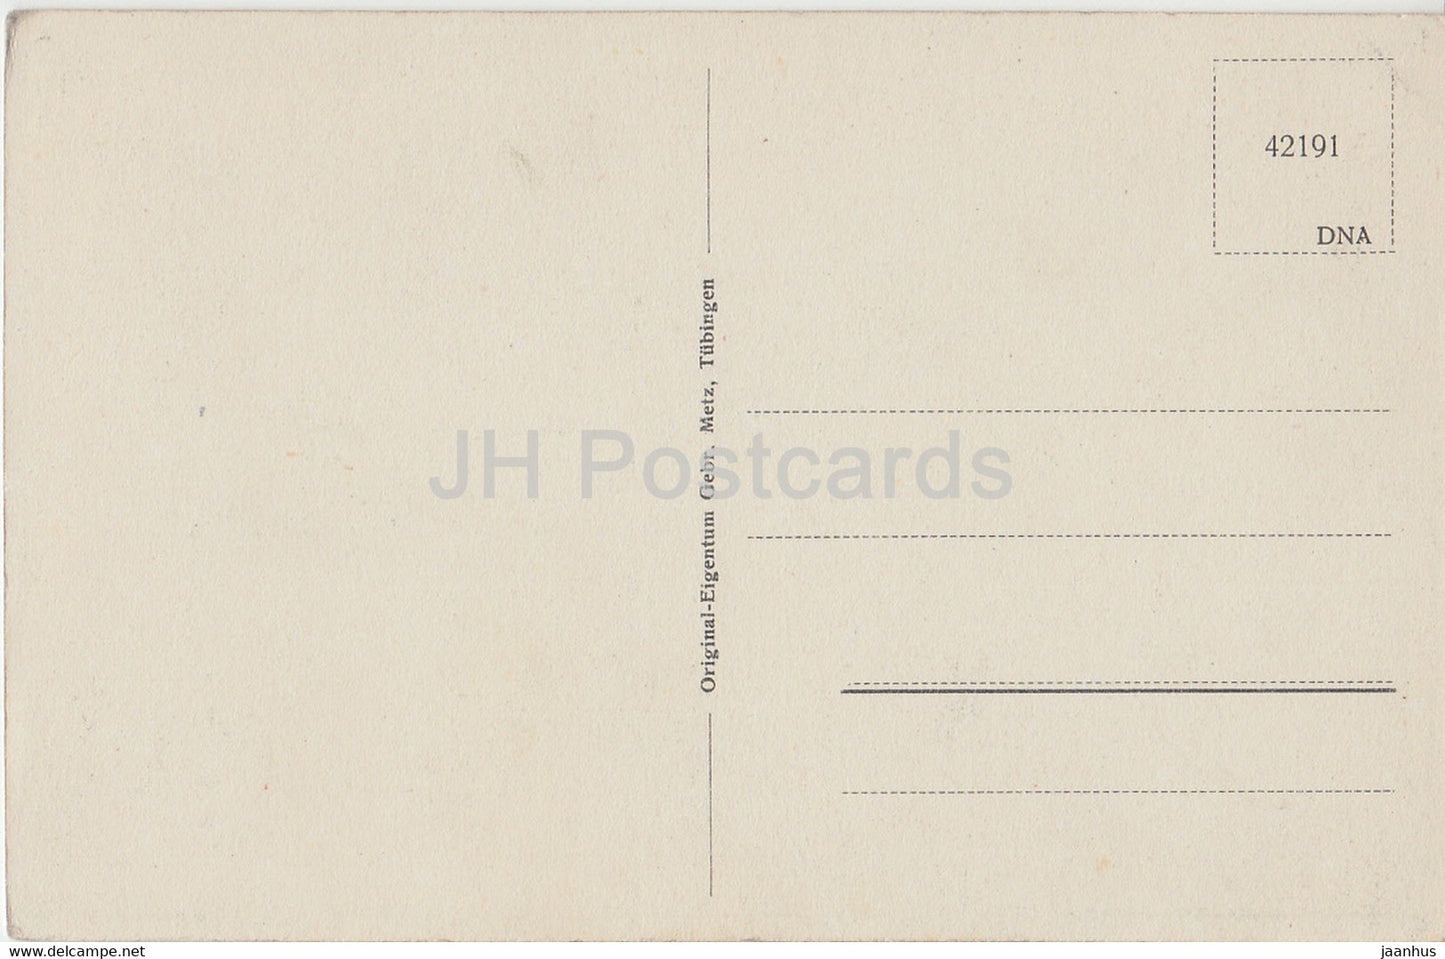 Lindau - Rathaus - 42191 - carte postale ancienne - Allemagne - inutilisée